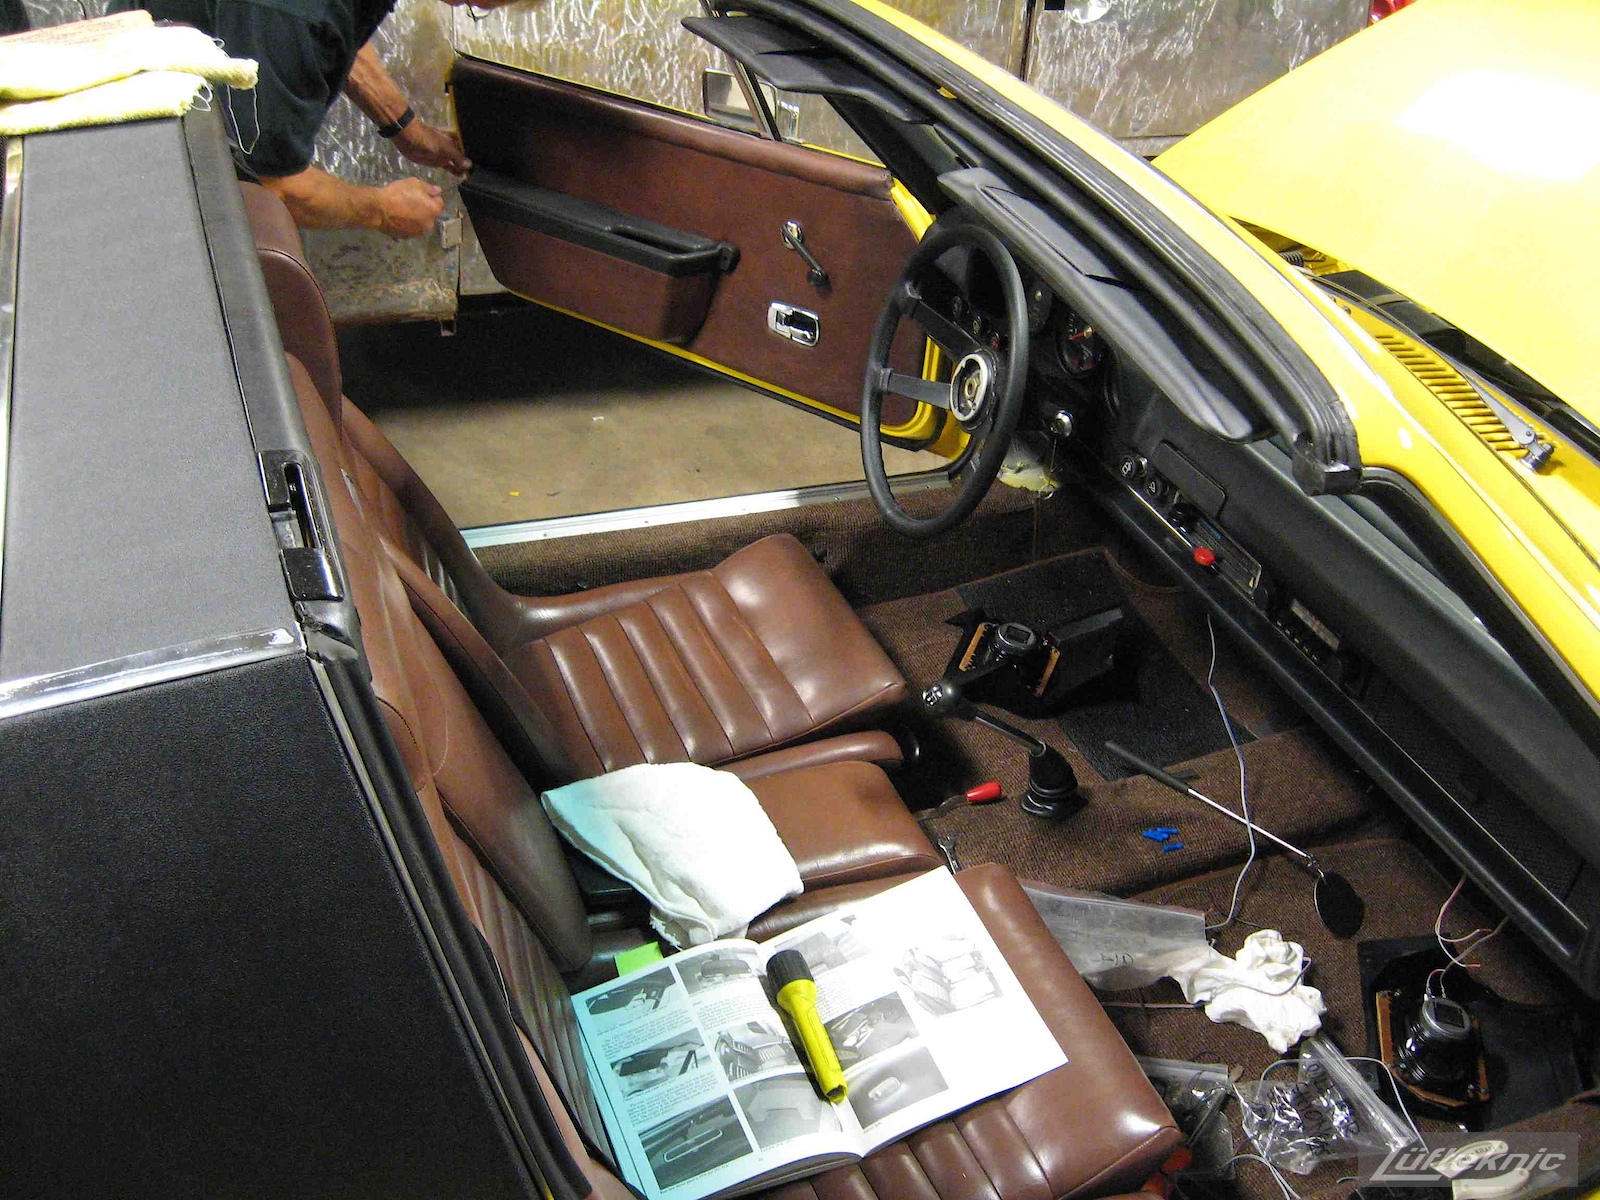 Brown original interior installed into a restored yellow Porsche 914 at Lufteknic.